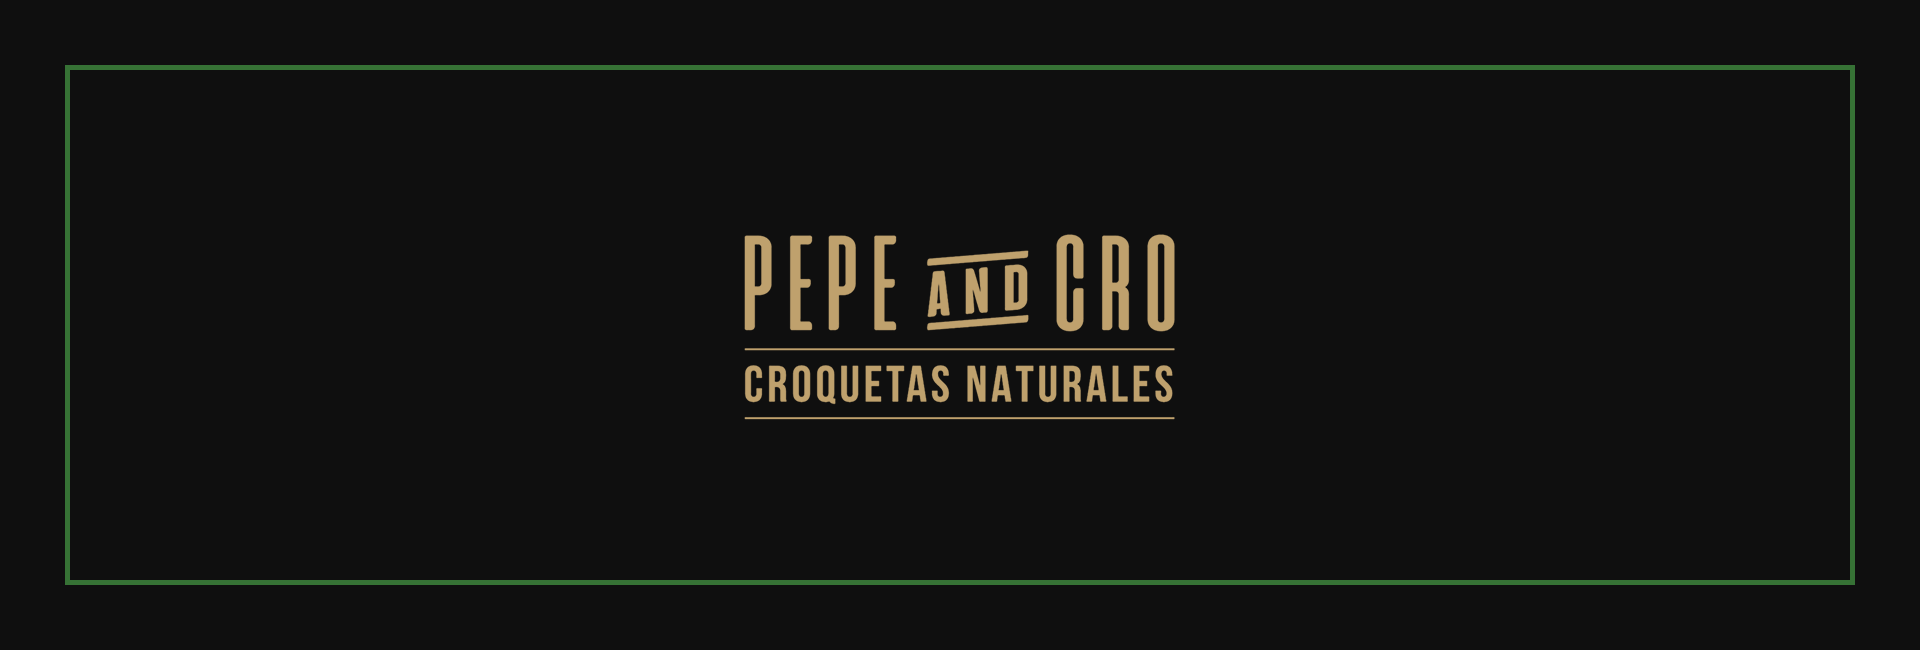 ¡El placer natural de un gran bocado! Pepe&Cro / Croquetas naturales